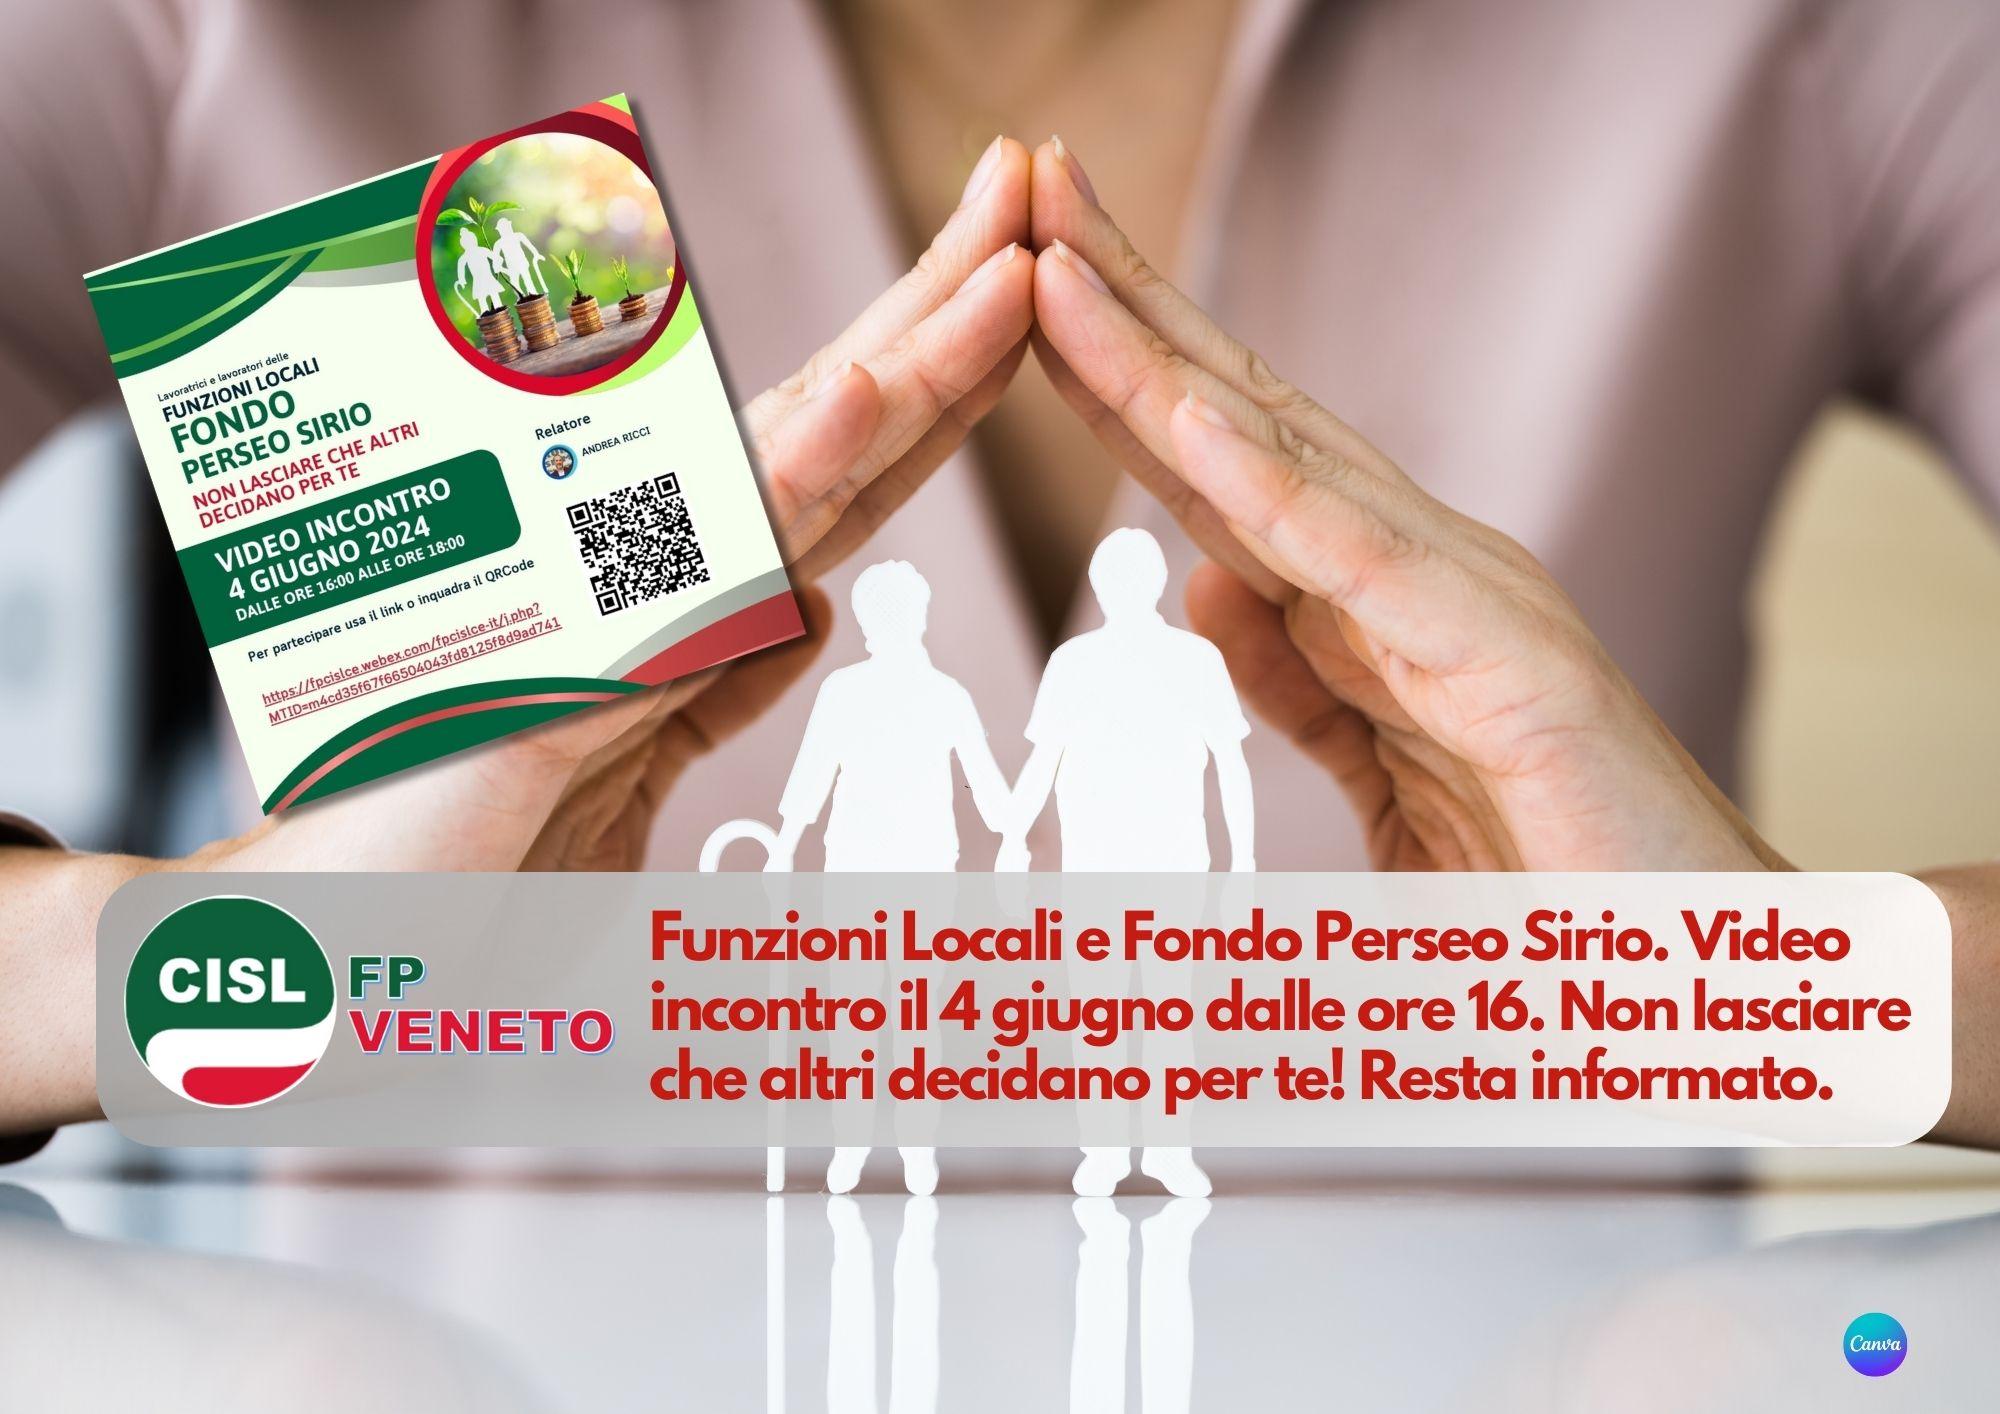 CISL FP Veneto. Funzioni Locali e Fondo Perseo Sirio. Video incontro il 4 giugno dalle ore 16